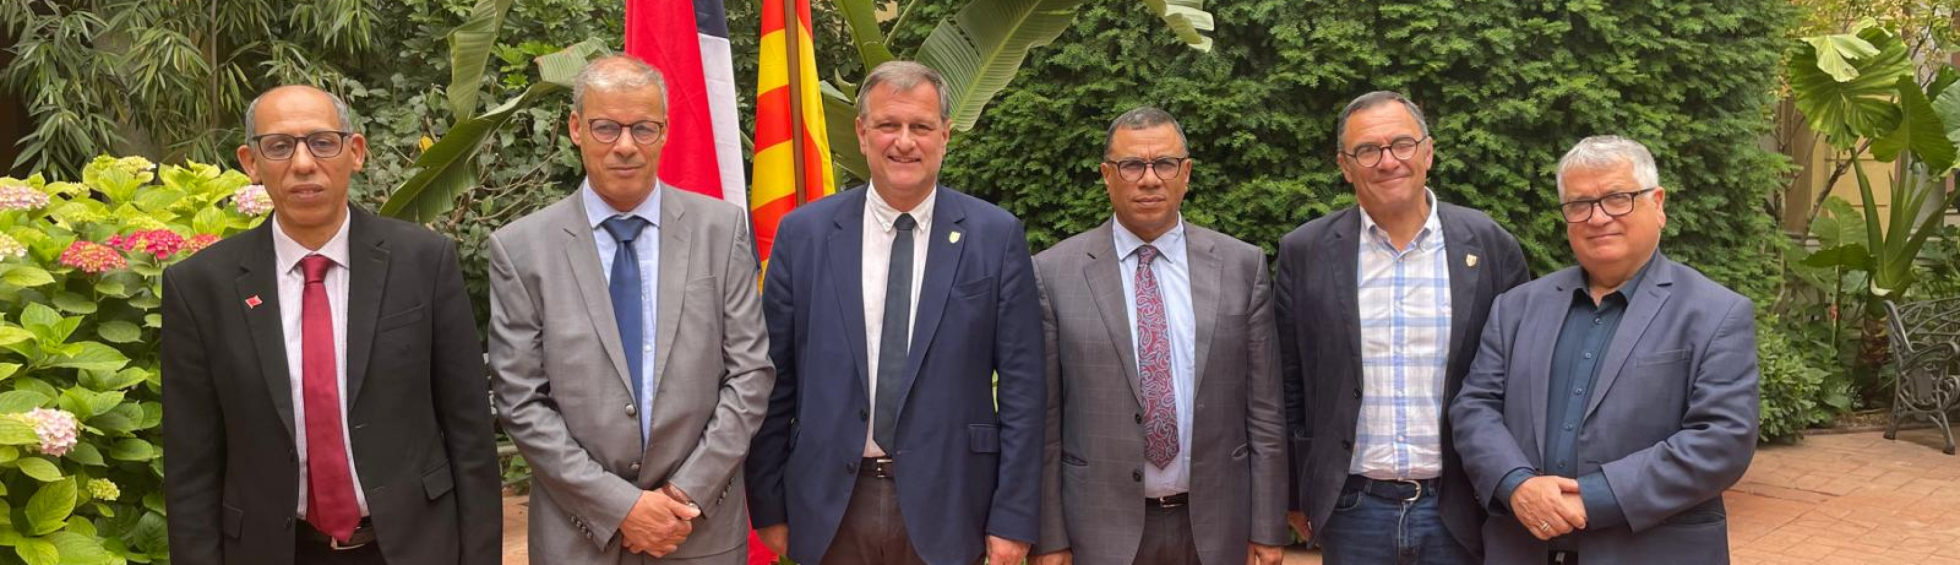 Louis Aliot, maire de Perpignan, reçoit une délégation d'experts marocains